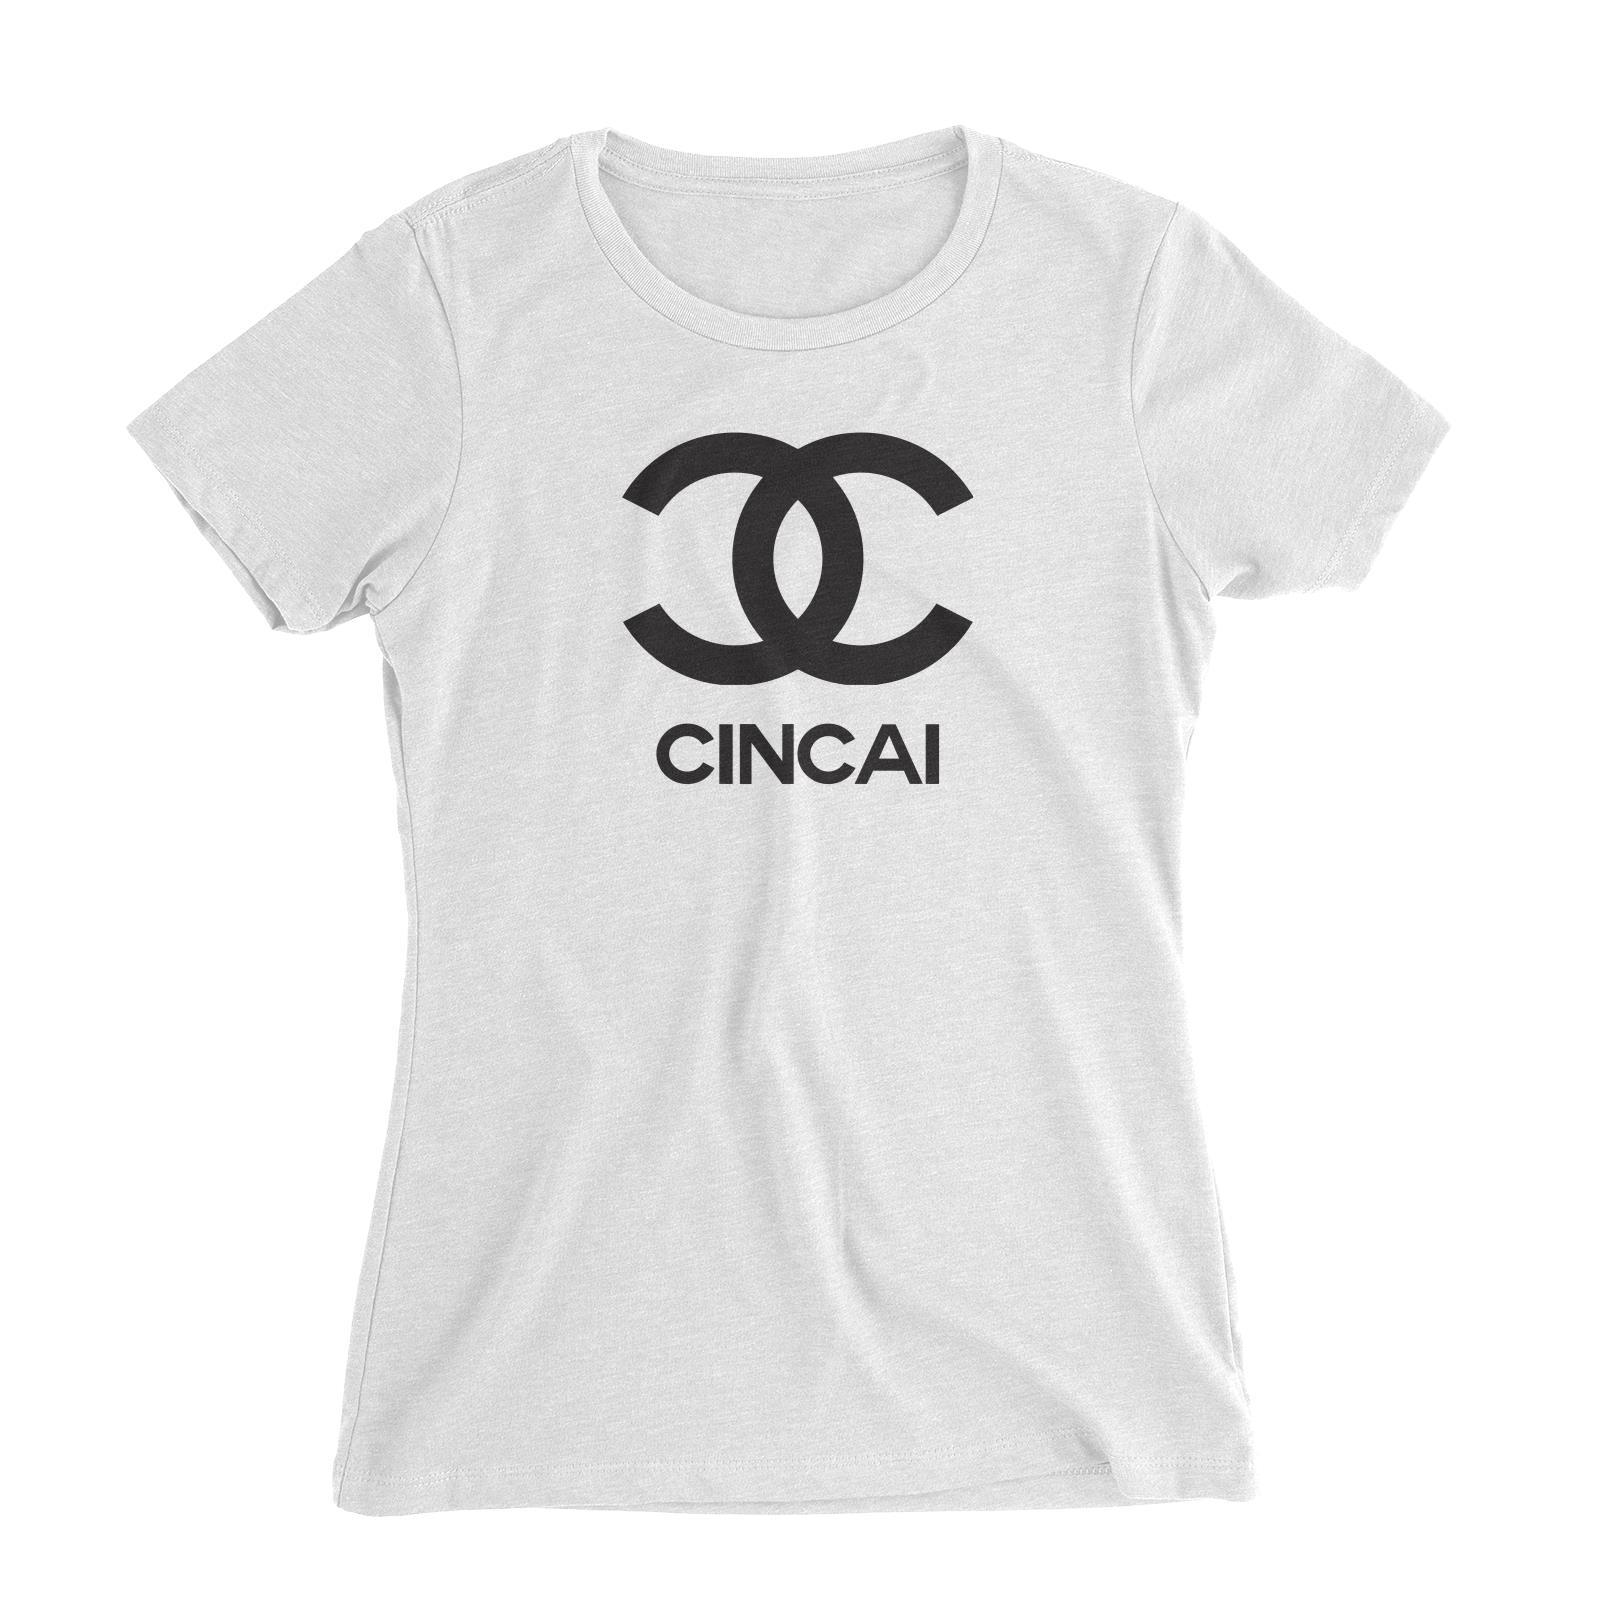 Slang Statement Cincai Women's Slim Fit T-Shirt